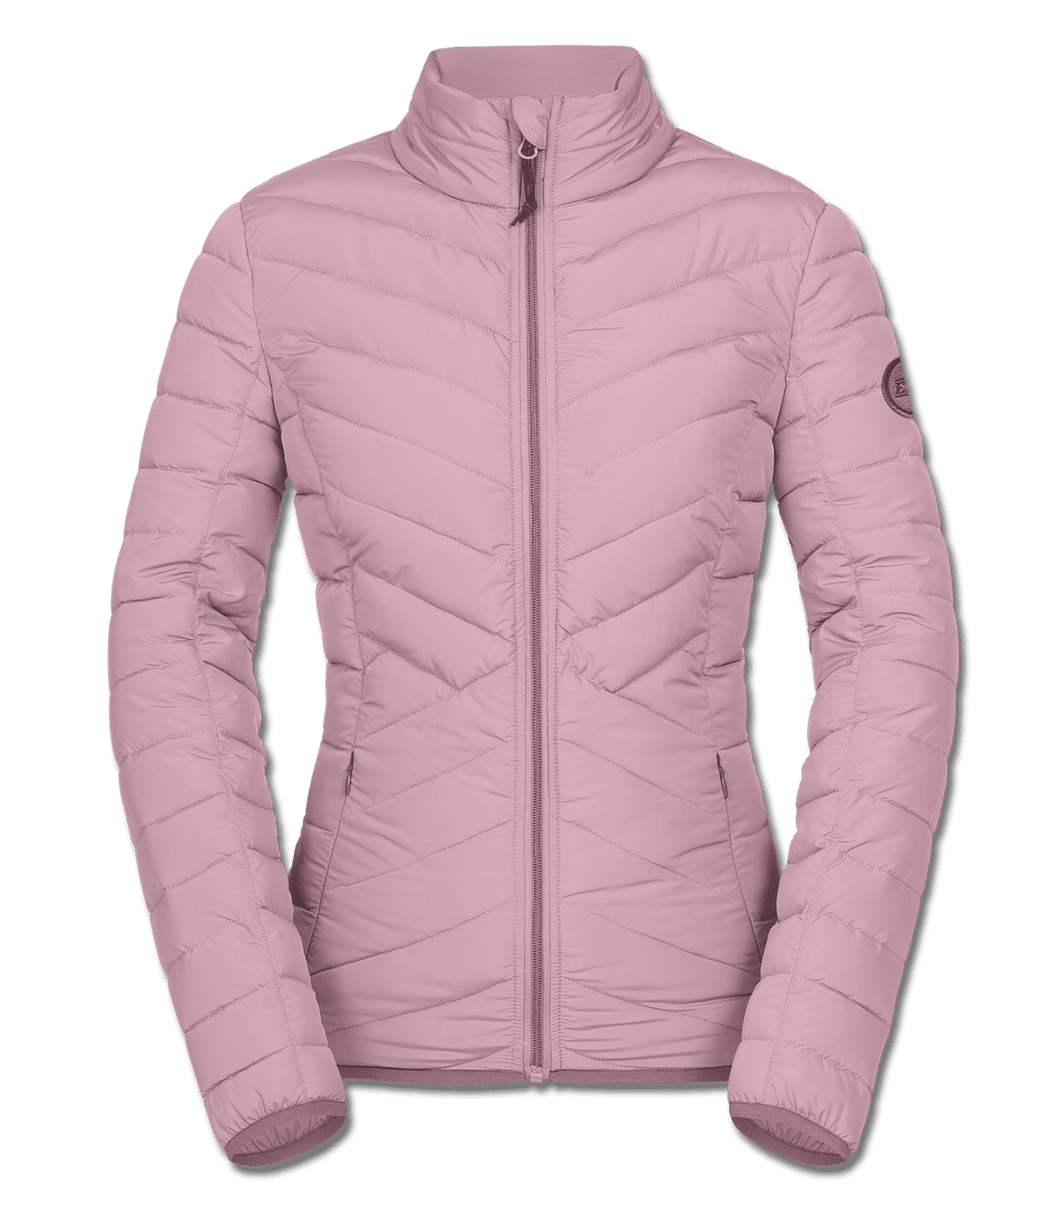 Blush Antwerpen lightweight jacket